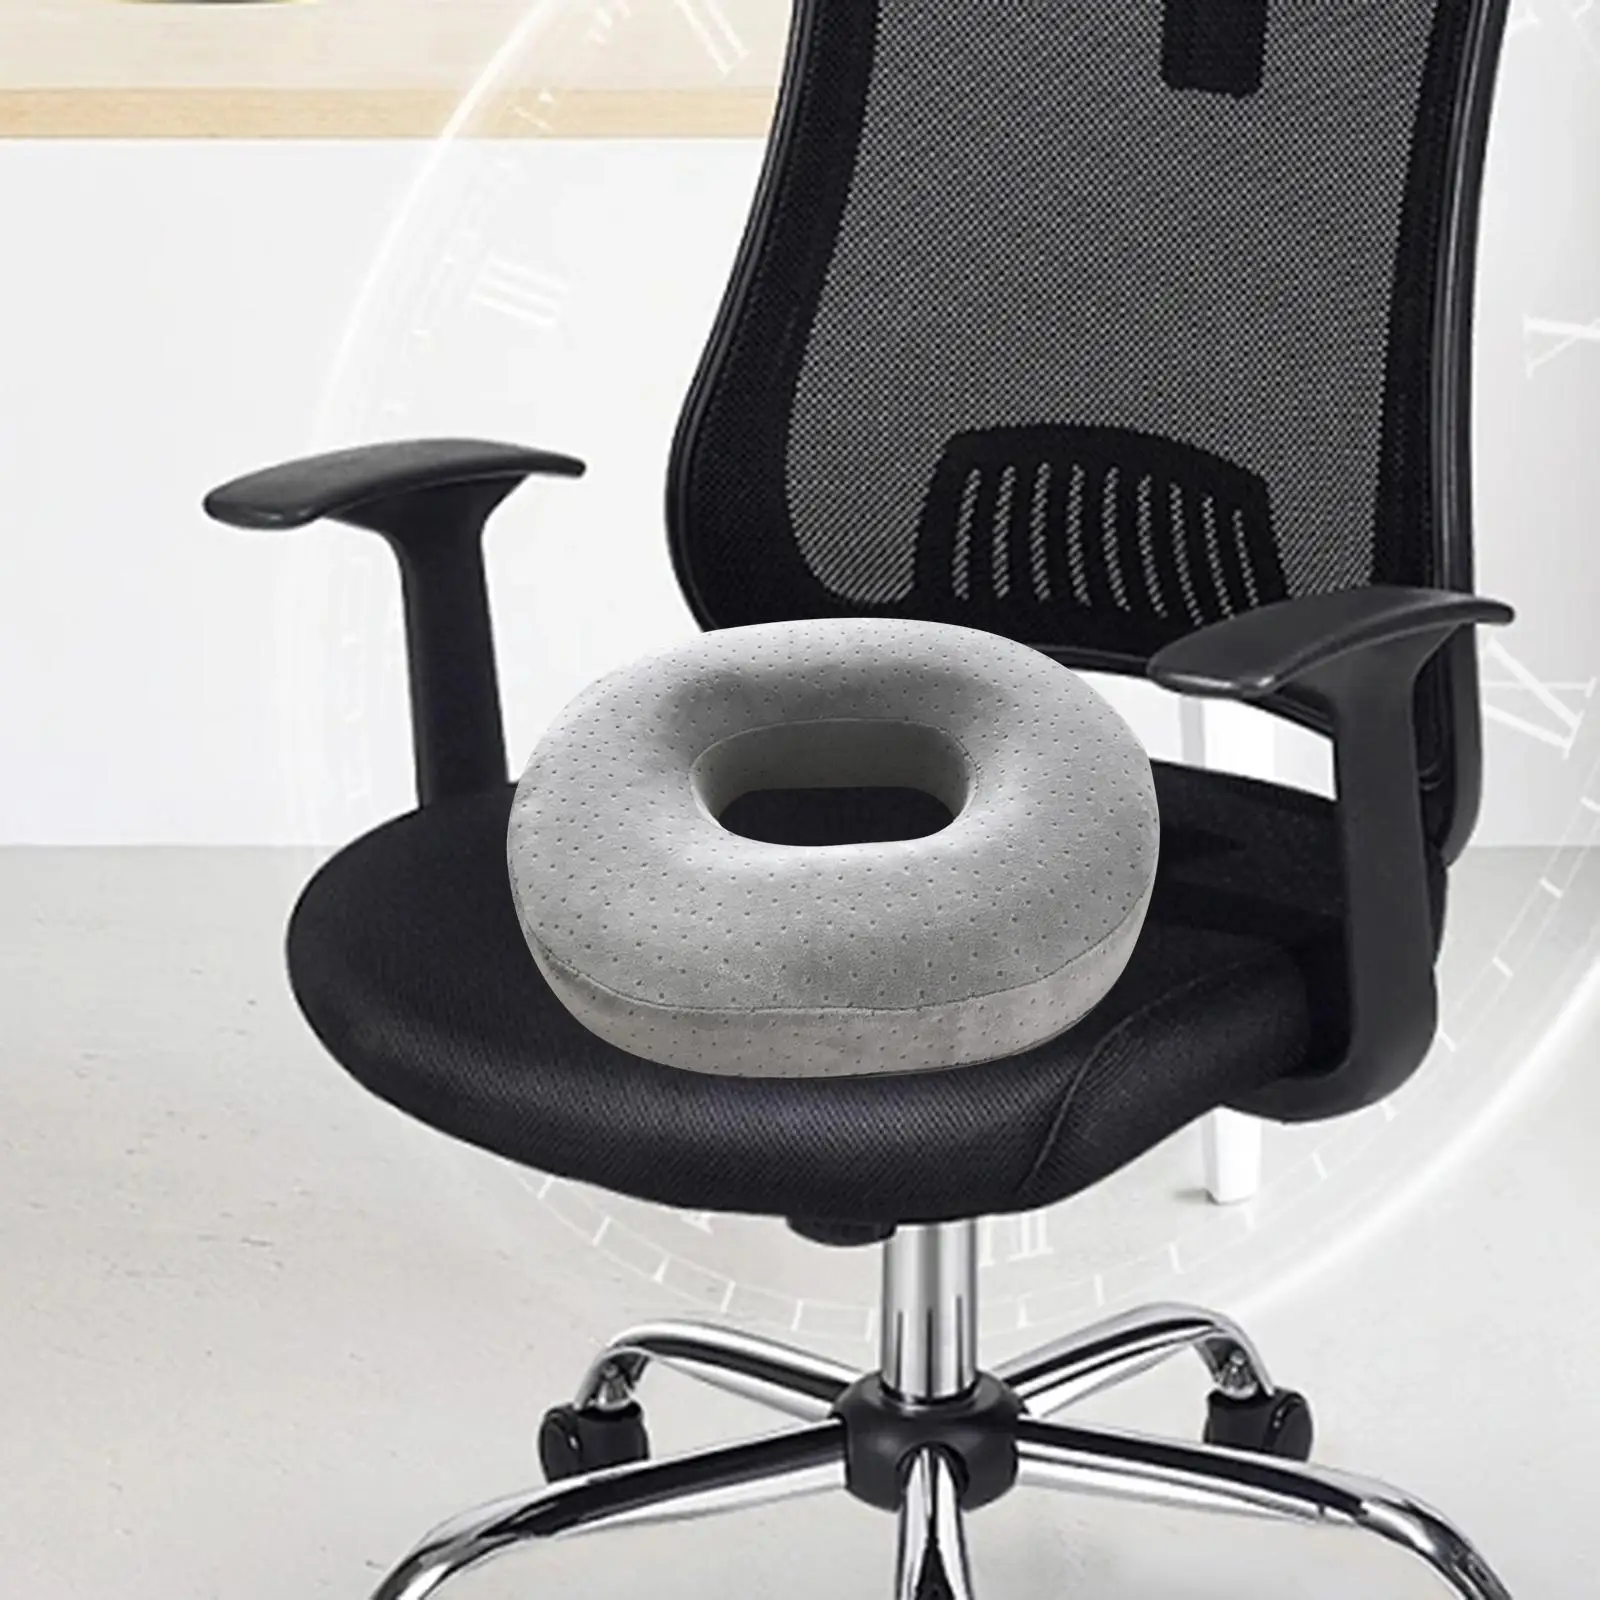 Seat Cushion Lightweight Easy to Clean Donut Cushion Tailbone Cushion Chair Cushion for Home Long Time Sitting Car Chair Office